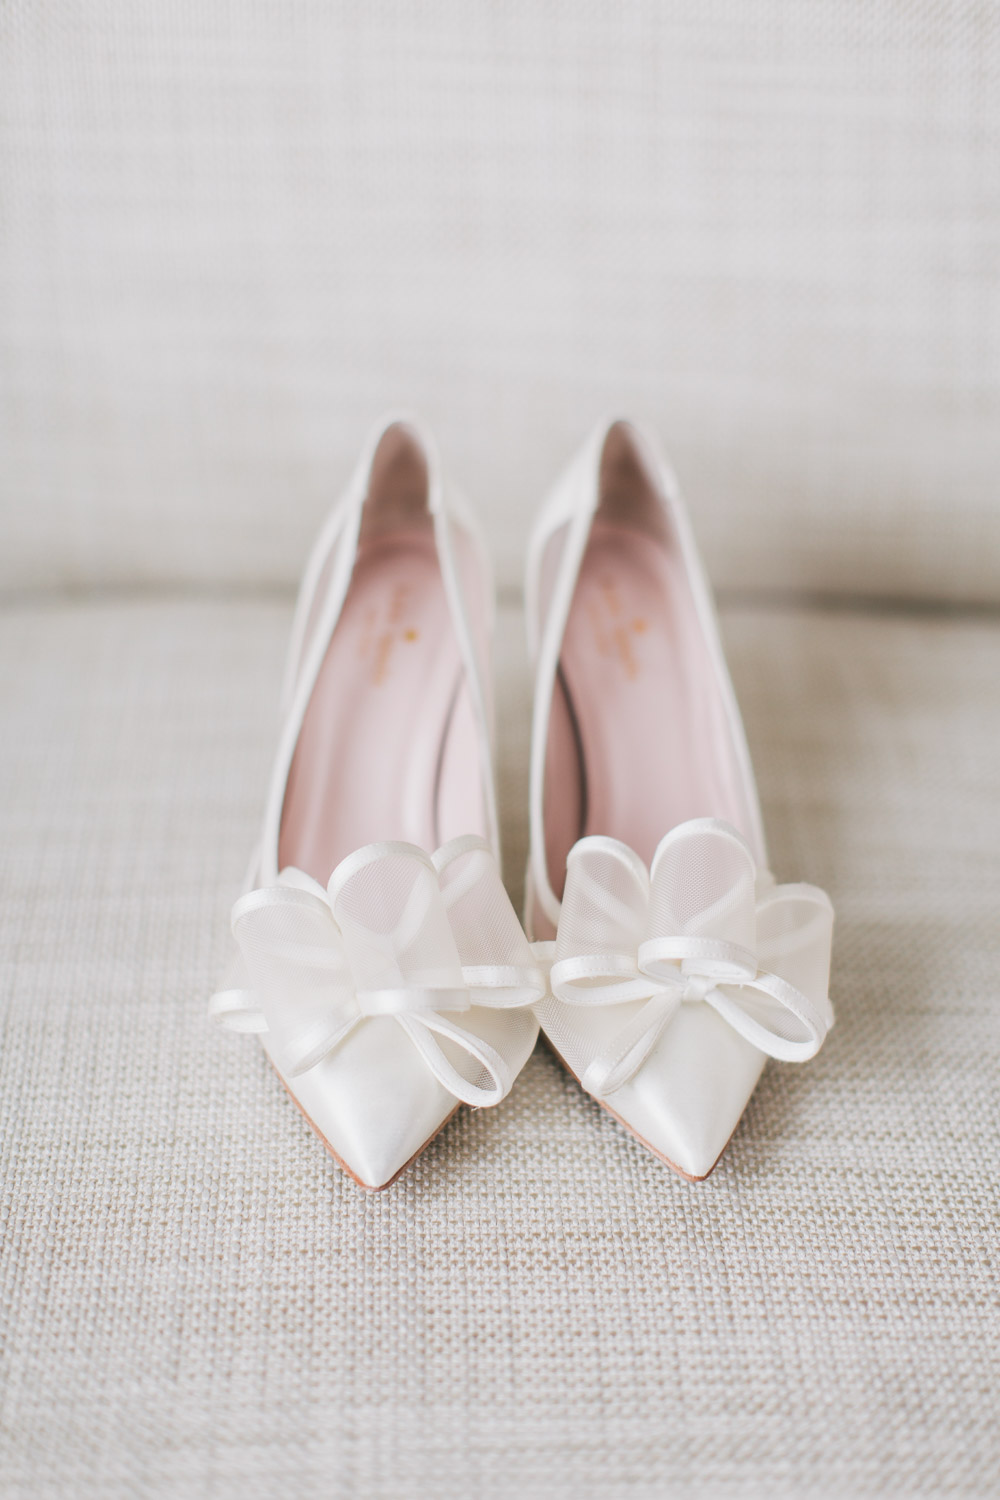 Jewish bride shoes